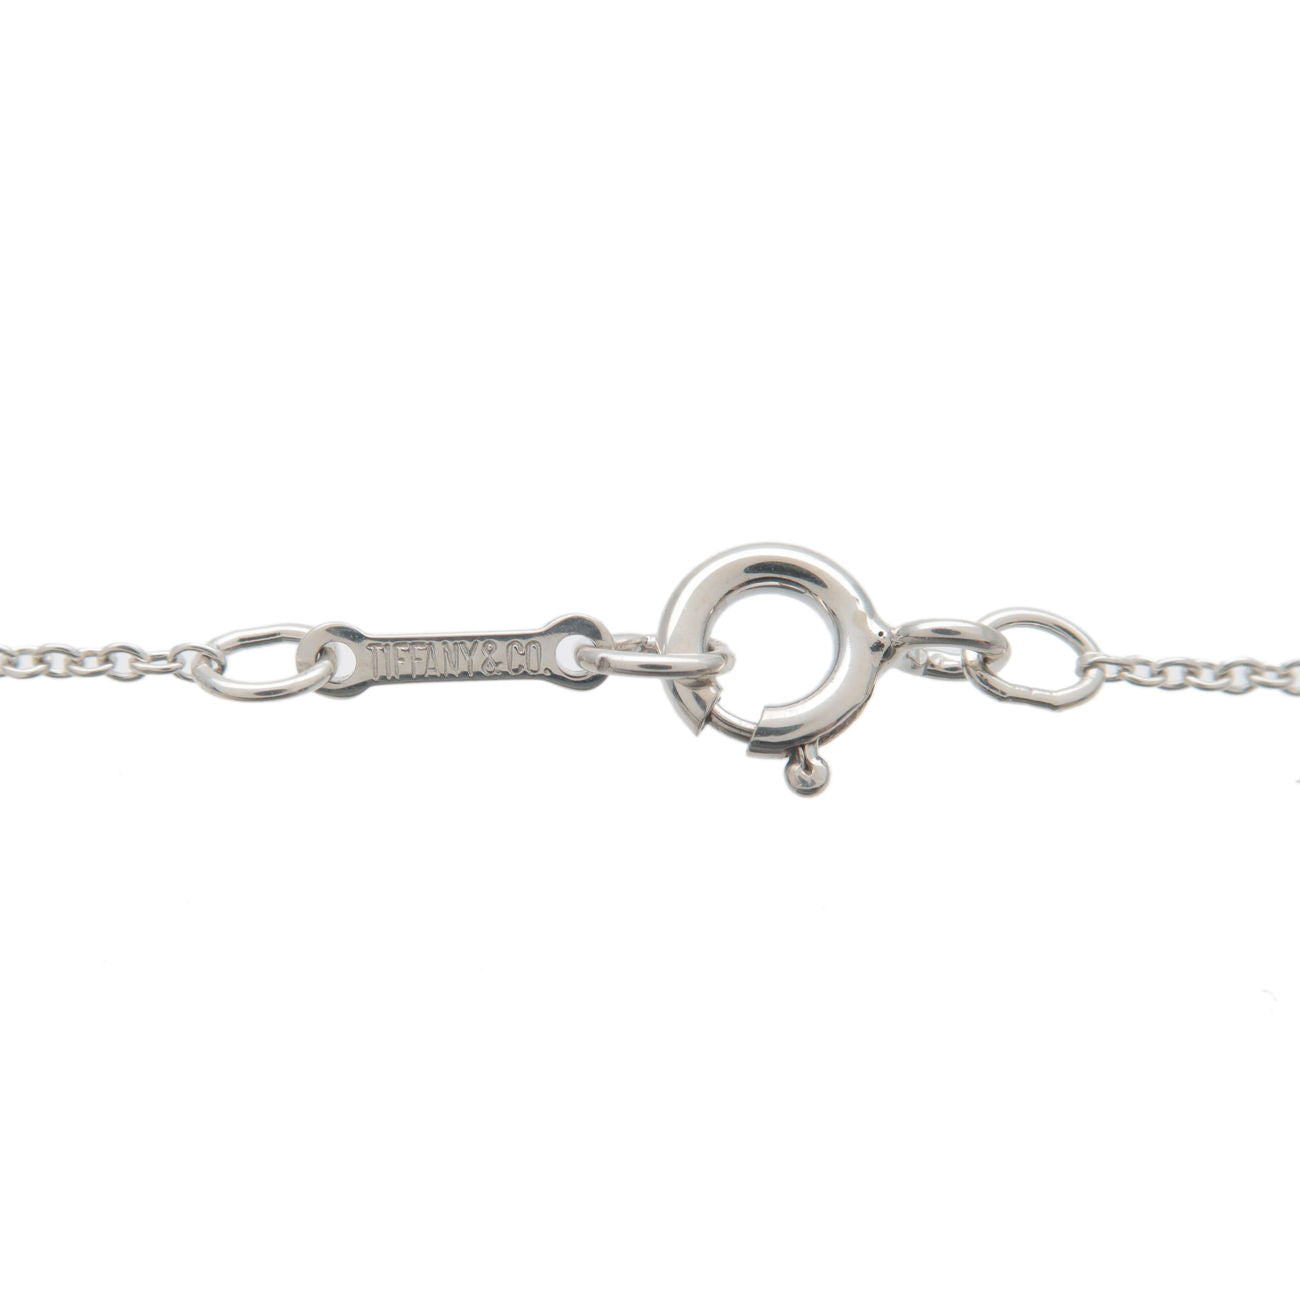 Tiffany&Co. Tiffany Bean Bean Charm Necklace Small SV925 Silver